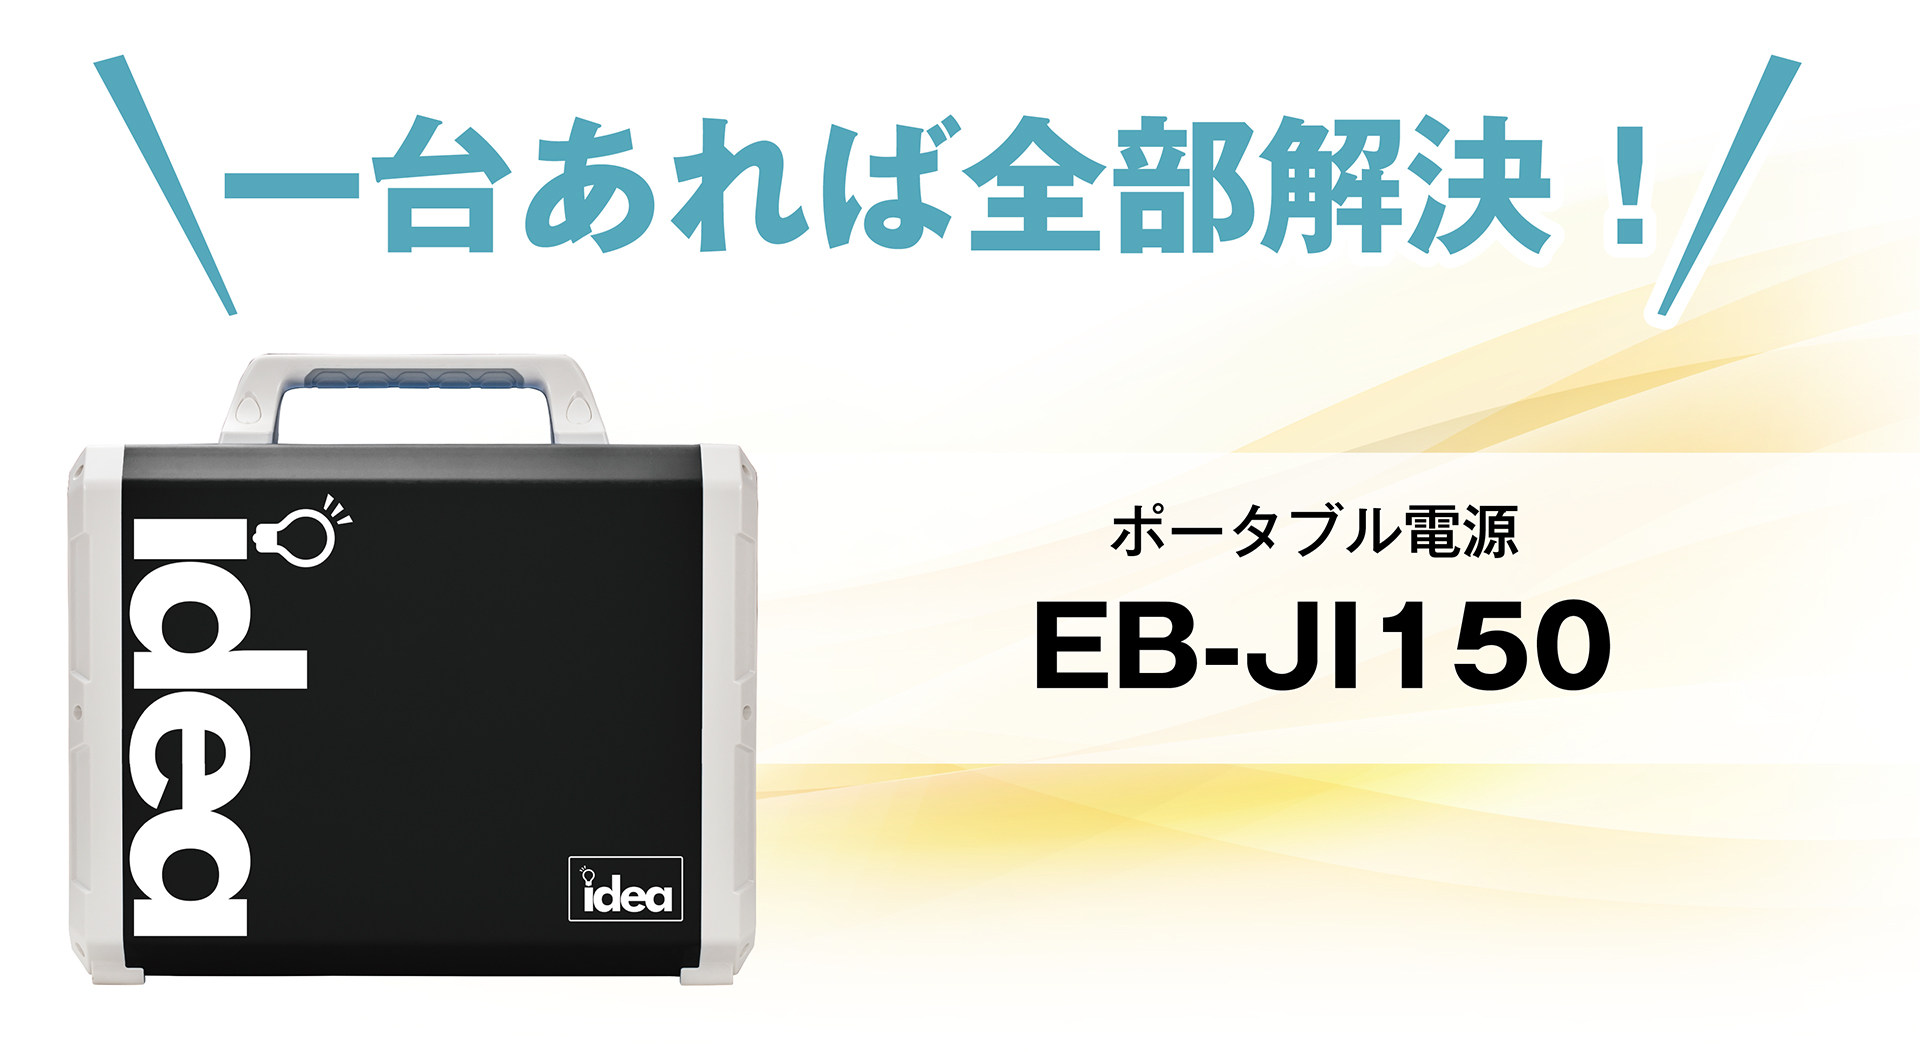 ポータブル電源 EB-JI150 | Idea